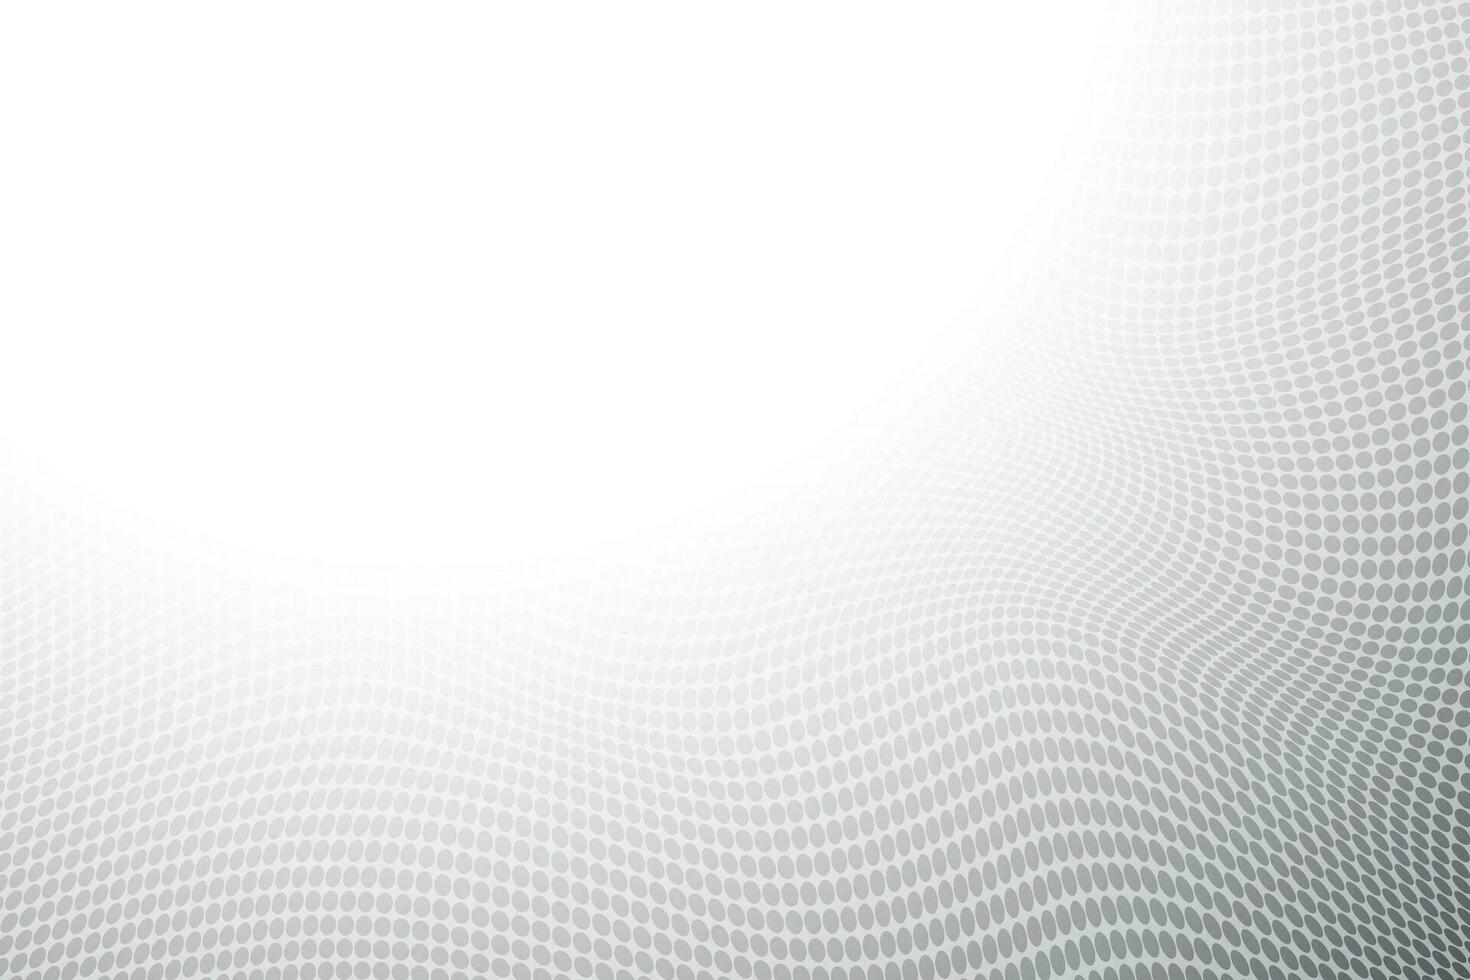 geometrico punto maglia pendenza sfondo. vettore illustrazione.grigio bianca colore sfondo con maglia di puntini o cerchi. mezzitoni punto radiale modello.vettore può essere Usato copertina disegno, prenotare, manifesto, sito web